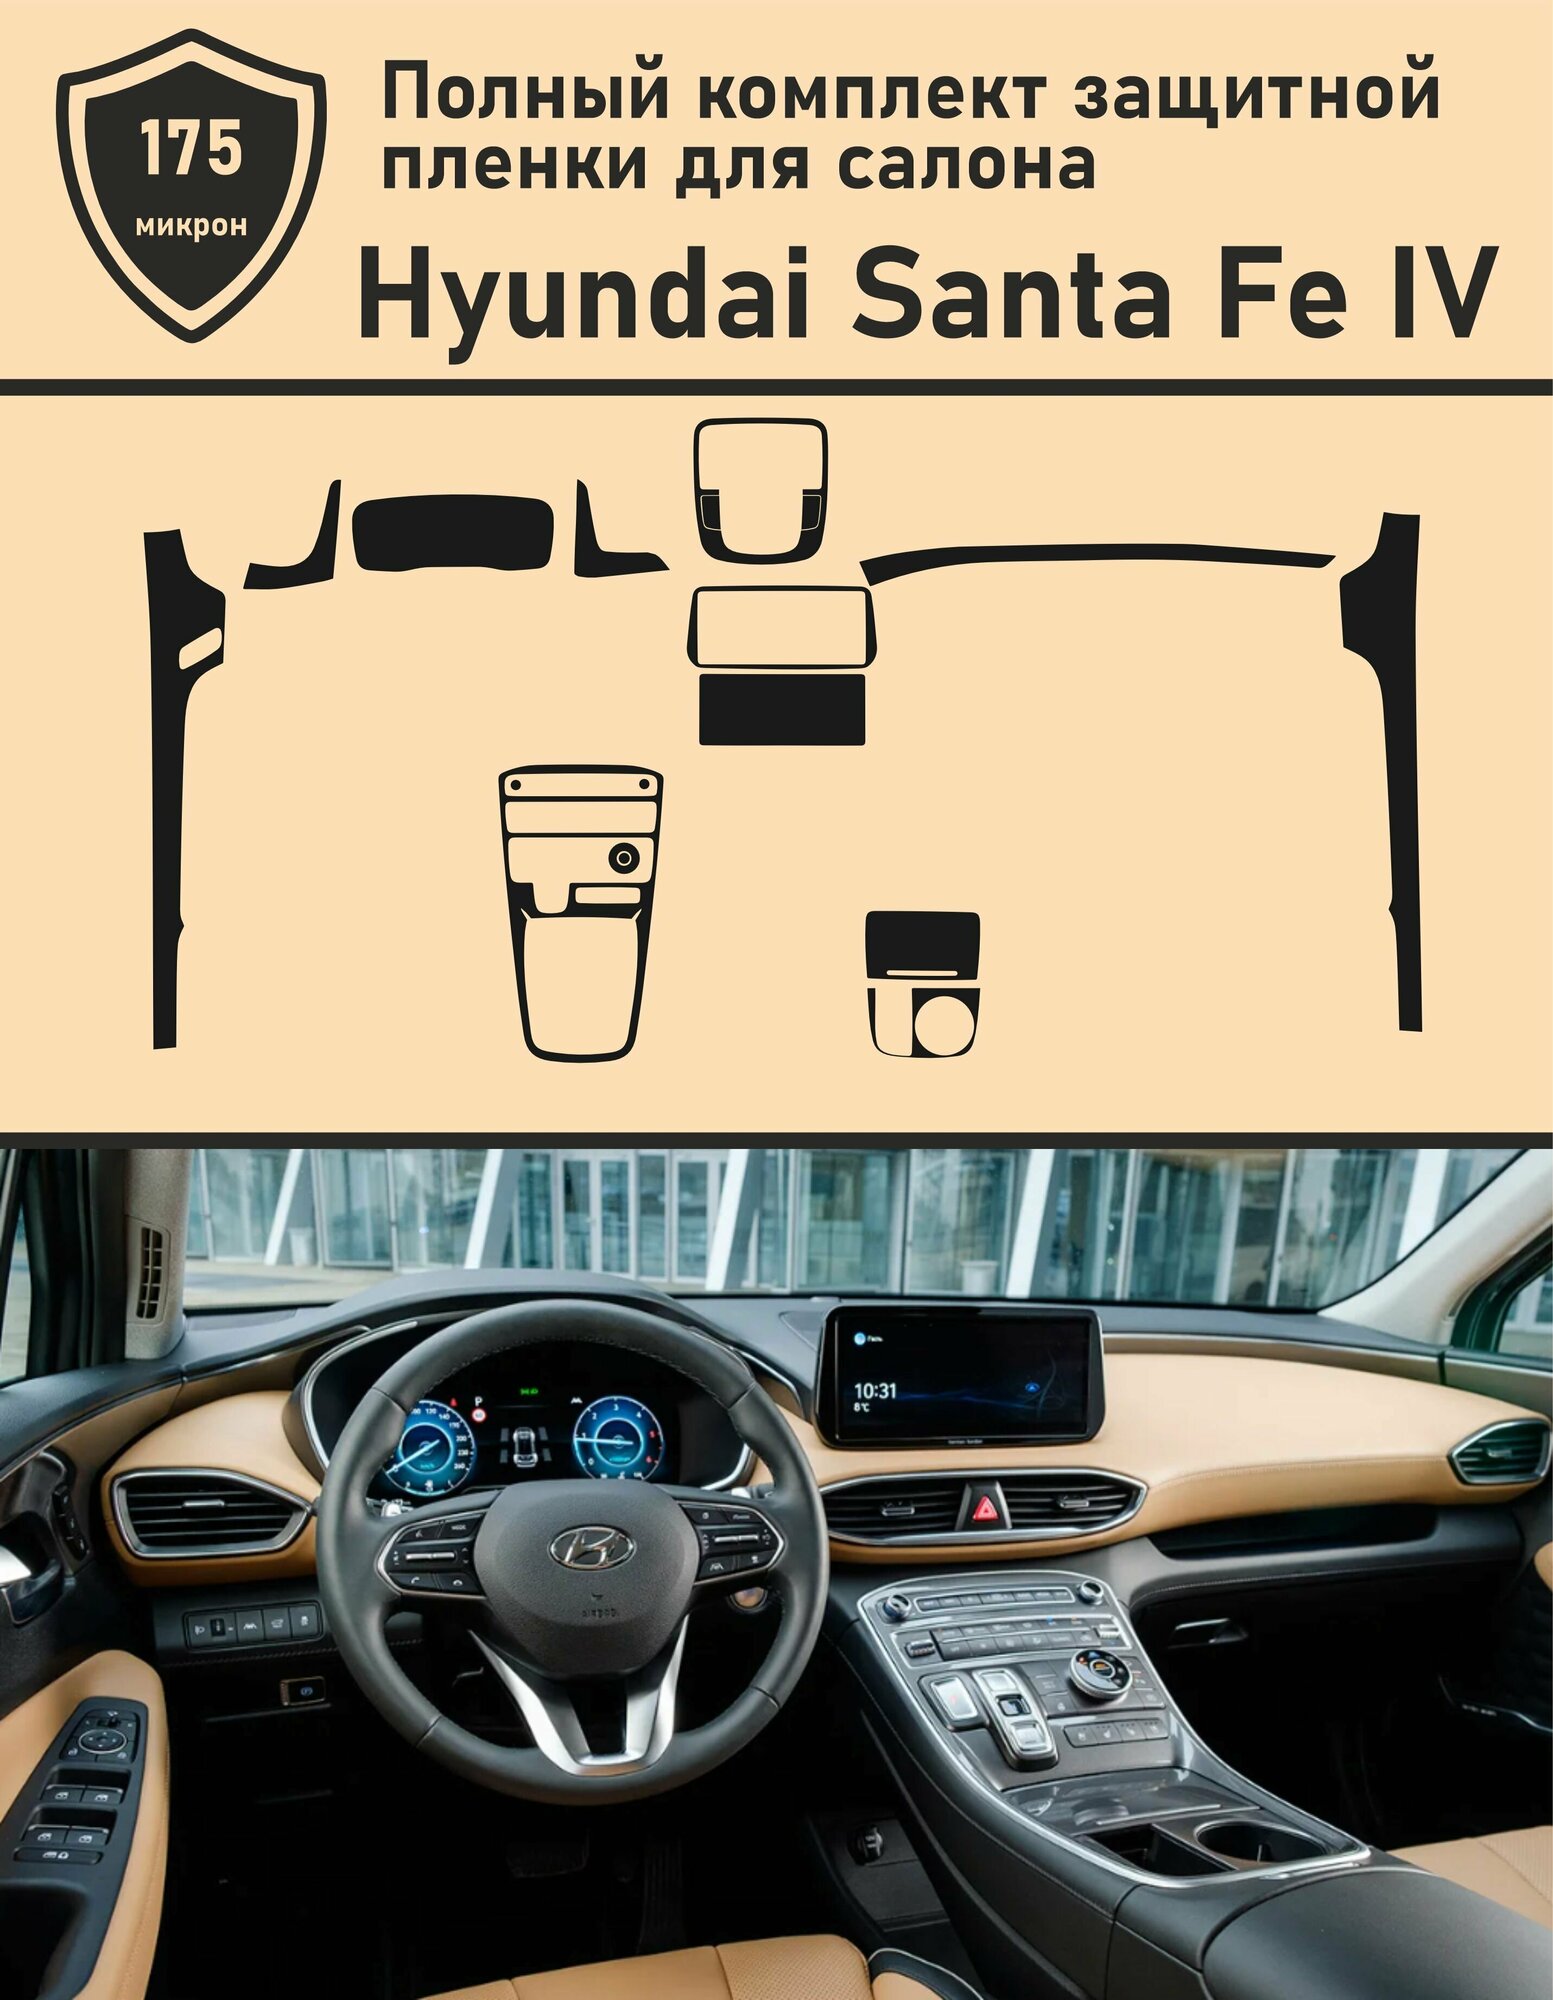 Hyundai Santa Fe IV рестайлинг/Полный комплект защитной пленки для салона